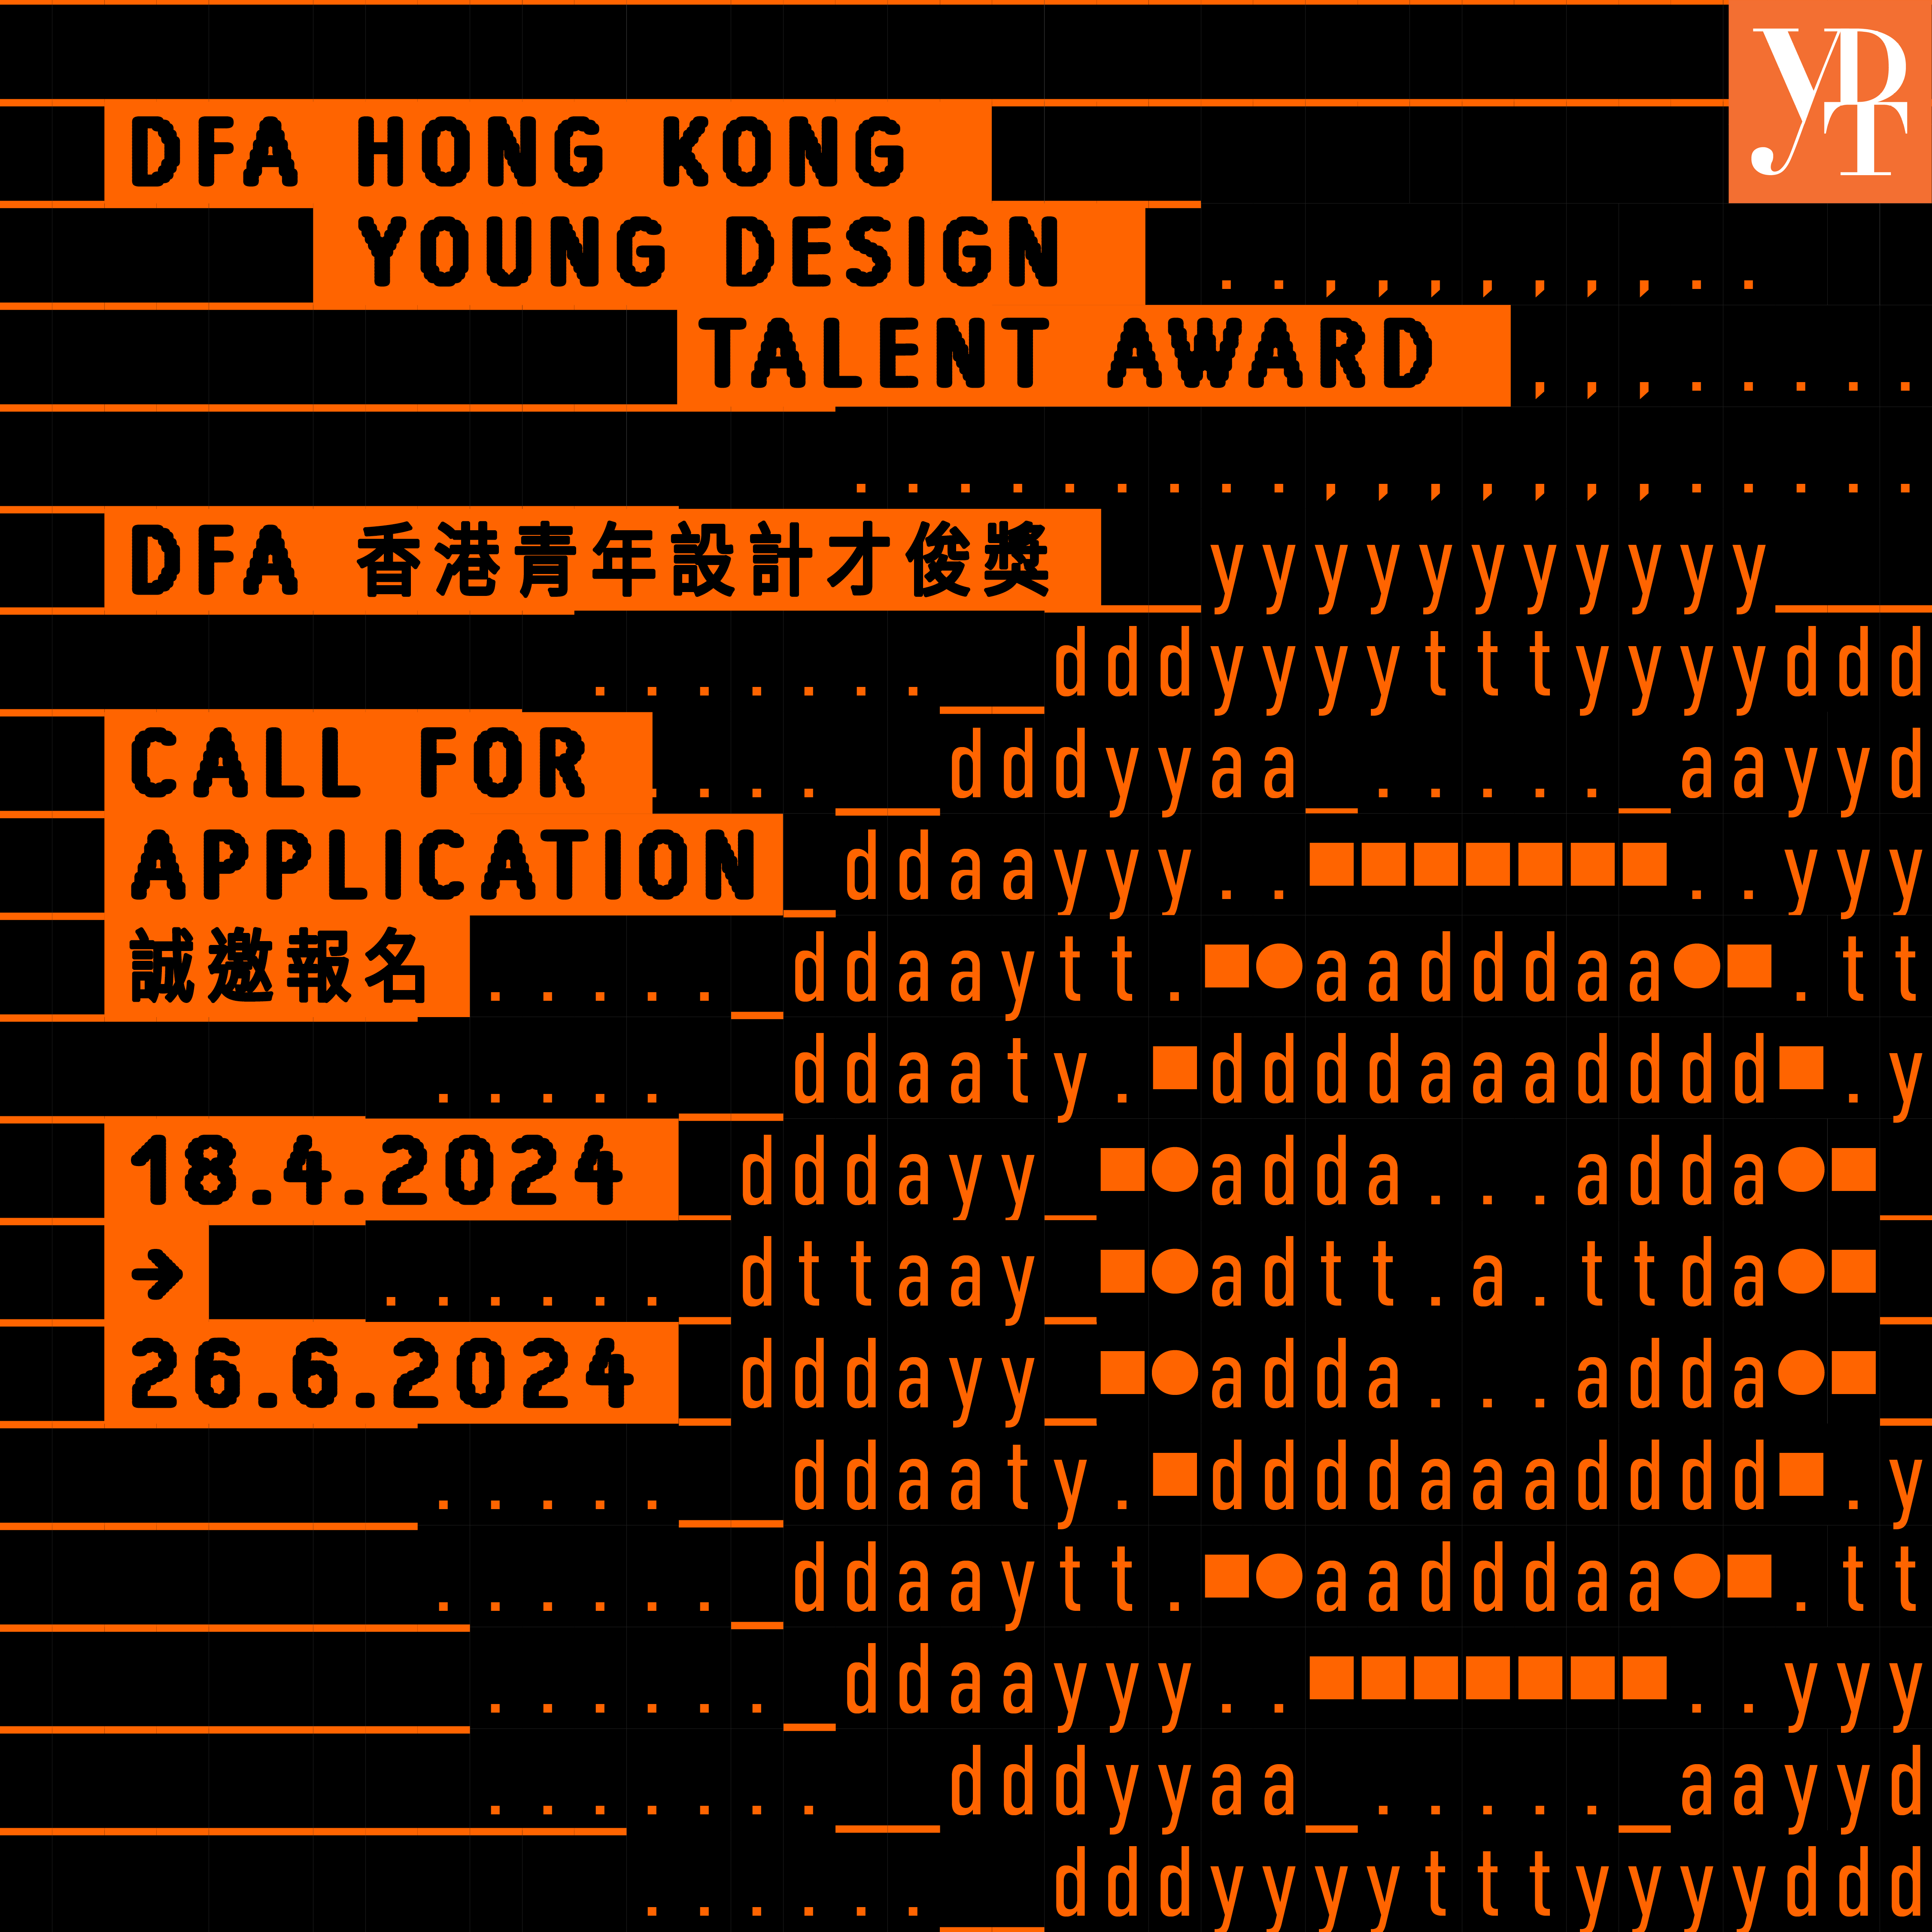 DFA香港青年设计才俊奖 2024